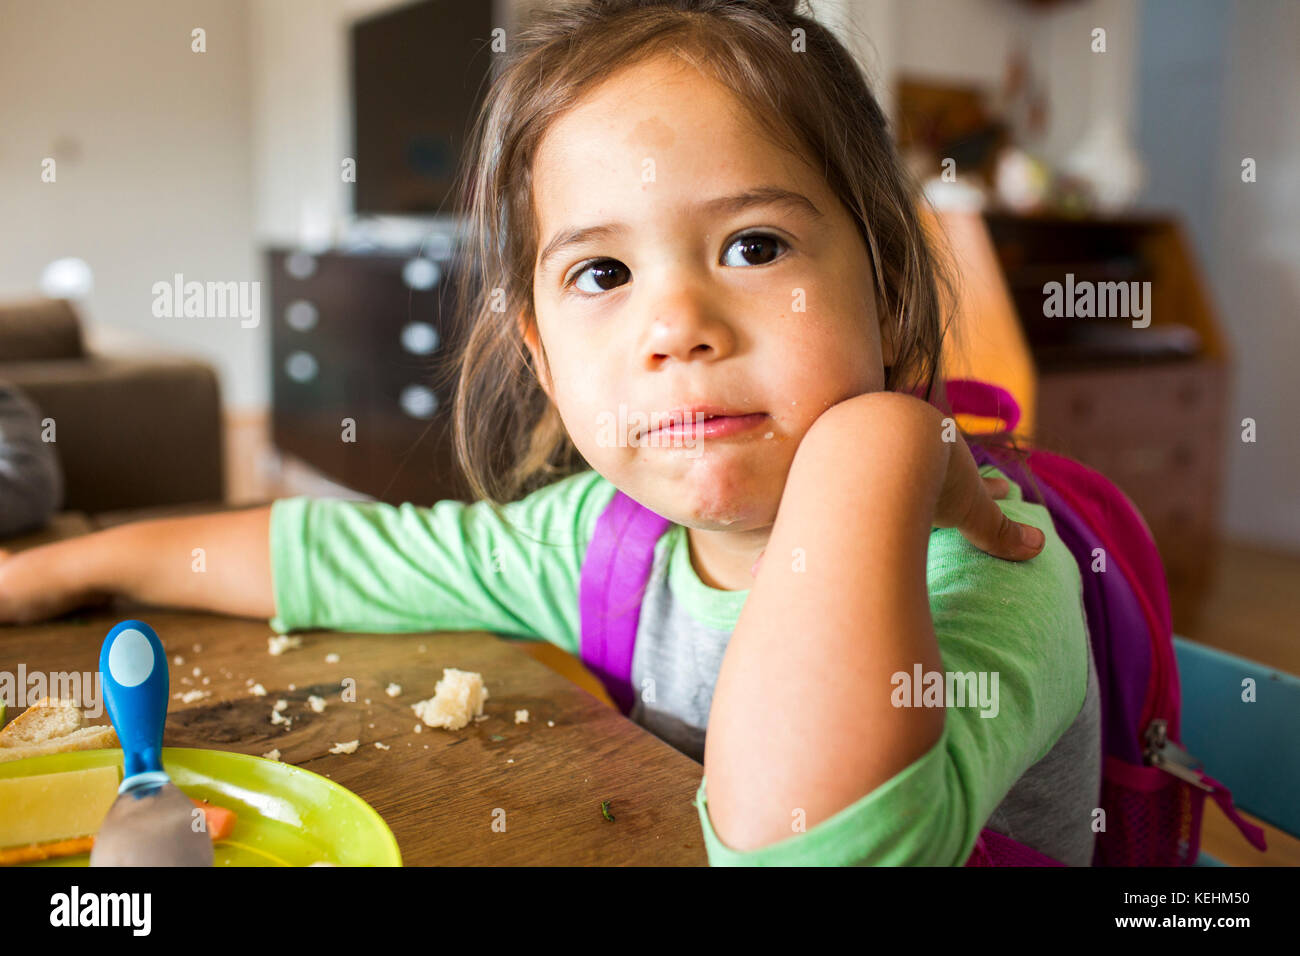 Una chica de raza mixta desordenada comiendo comida y llevando una mochila en la mesa Foto de stock